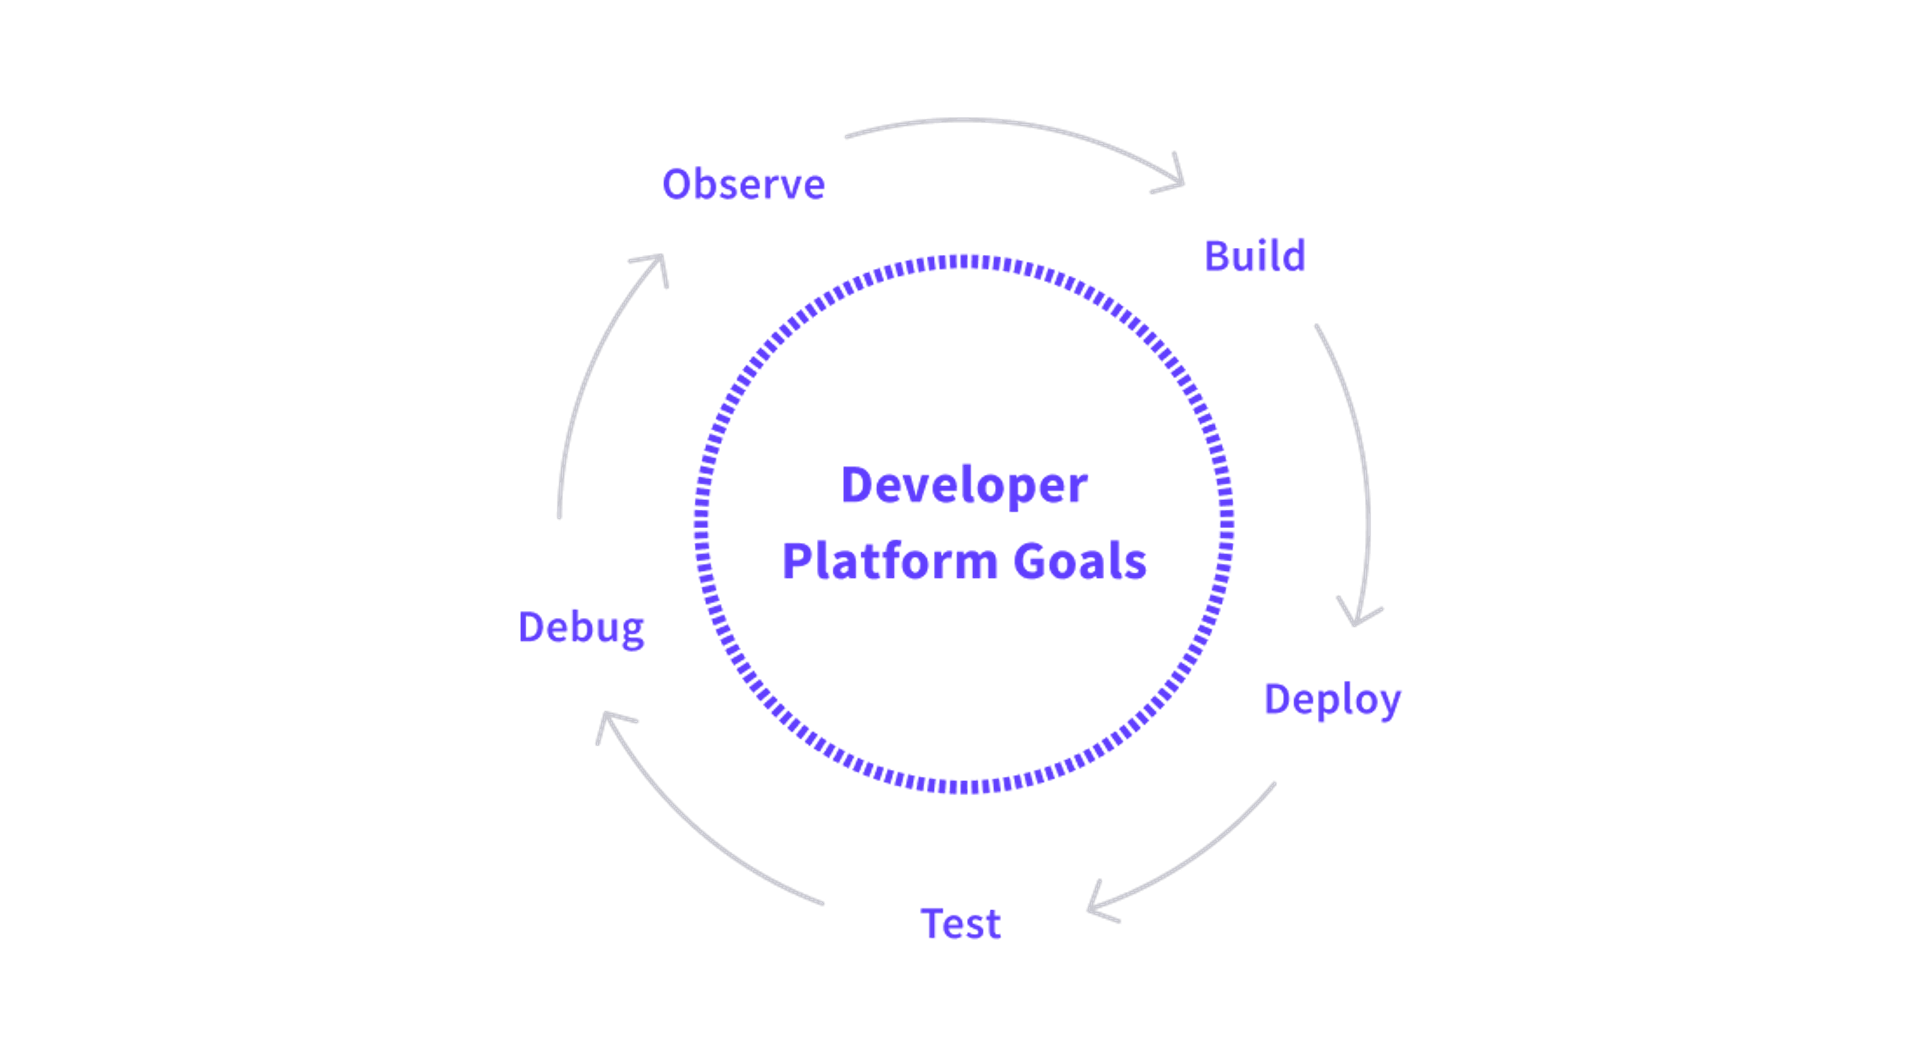 Developer Platform Goals